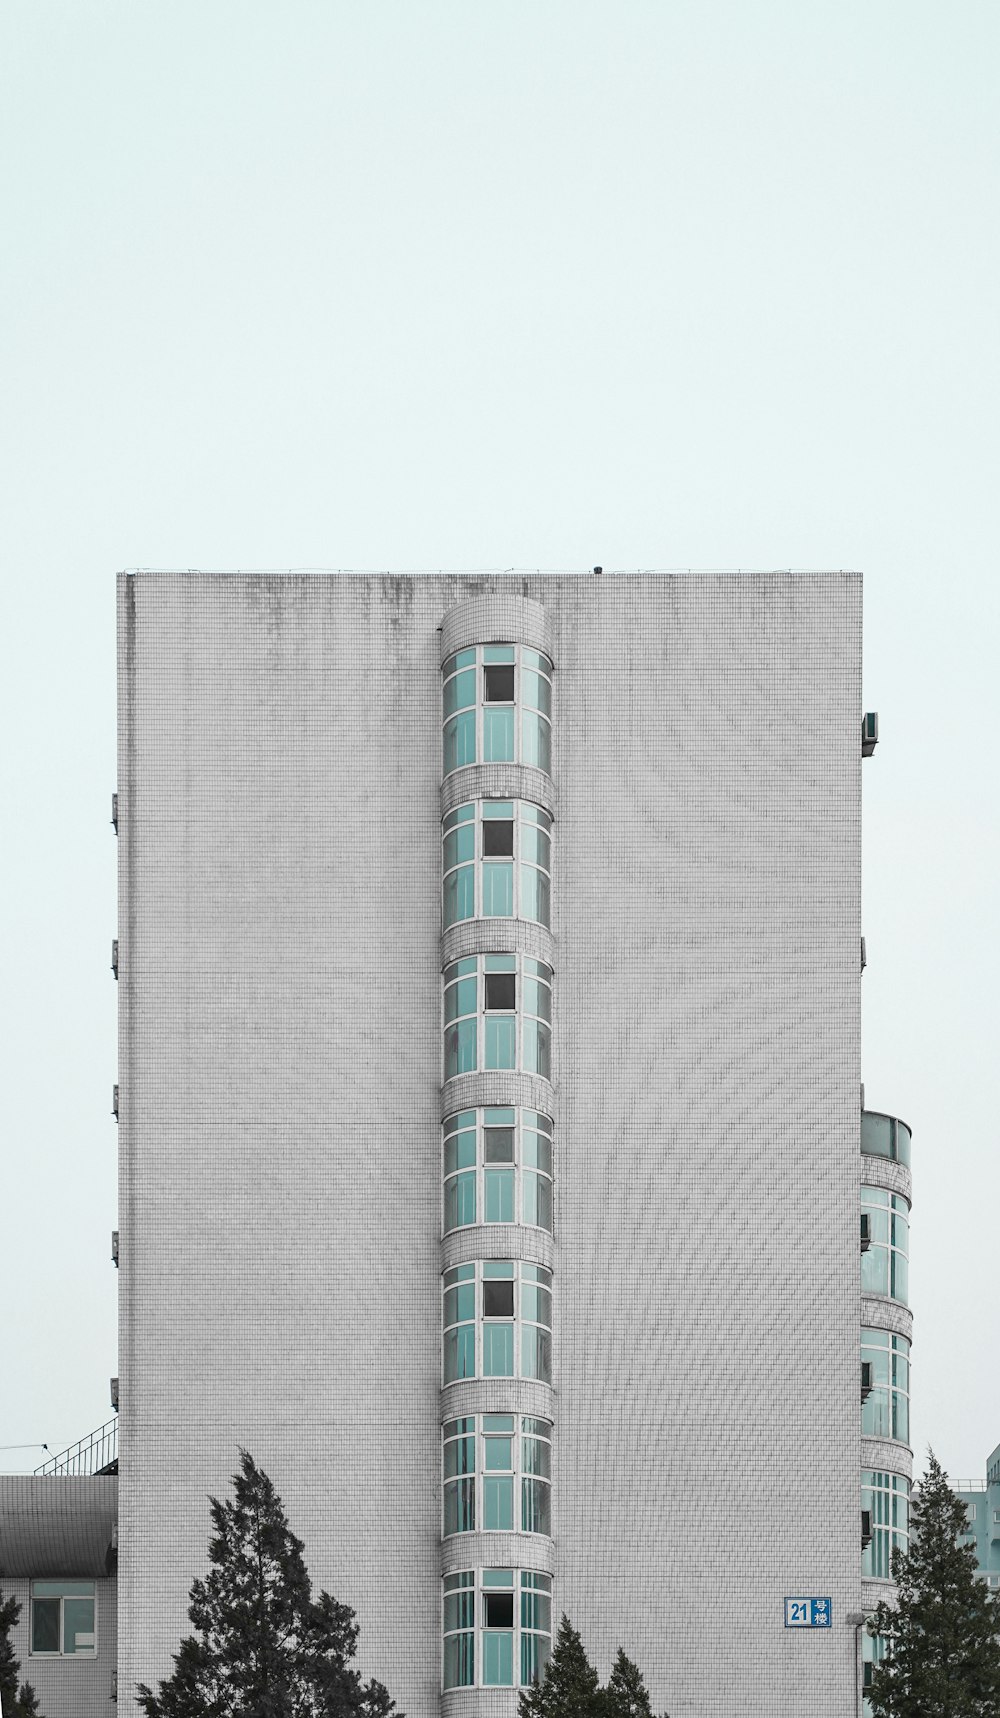 Edificio de gran altura pintado de blanco